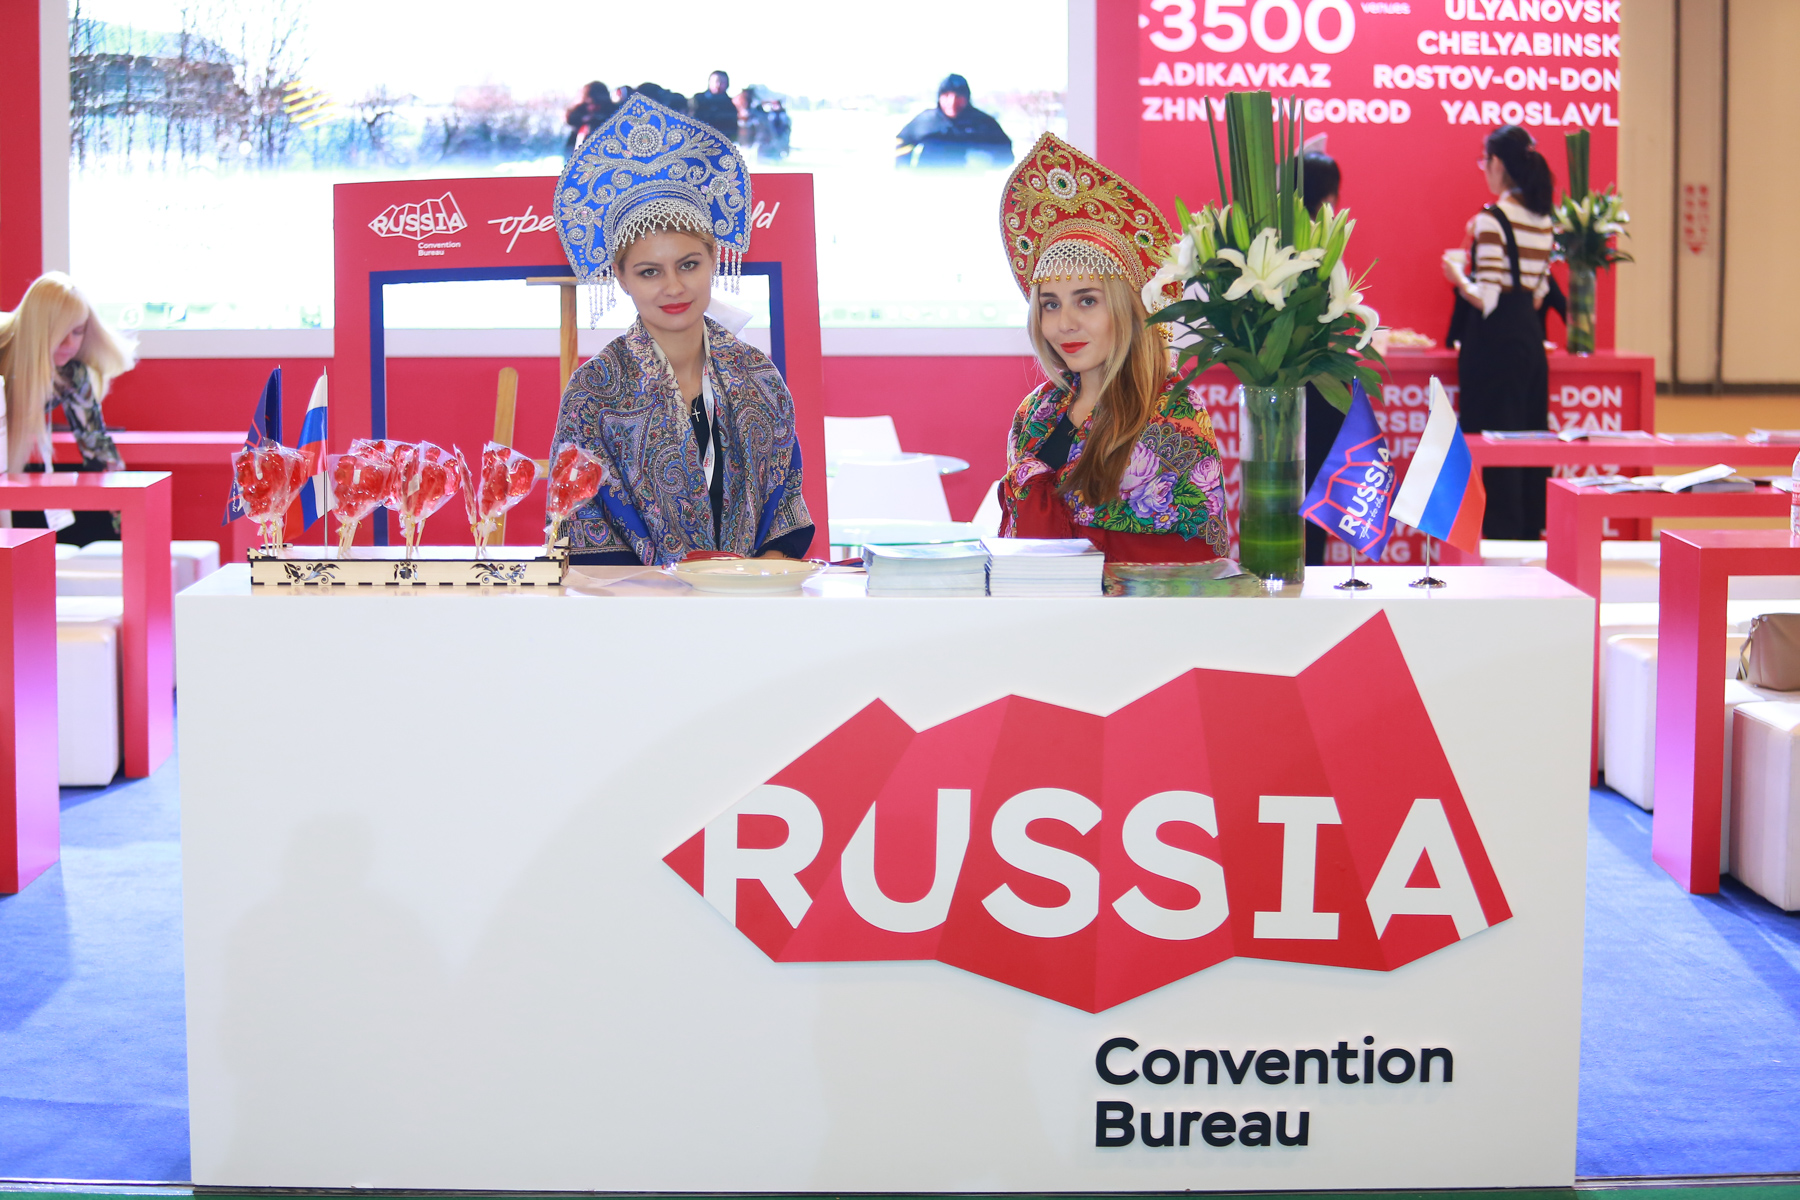 Национальное конгресс-бюро представило Россию на международной выставке IBTM China в Пекине